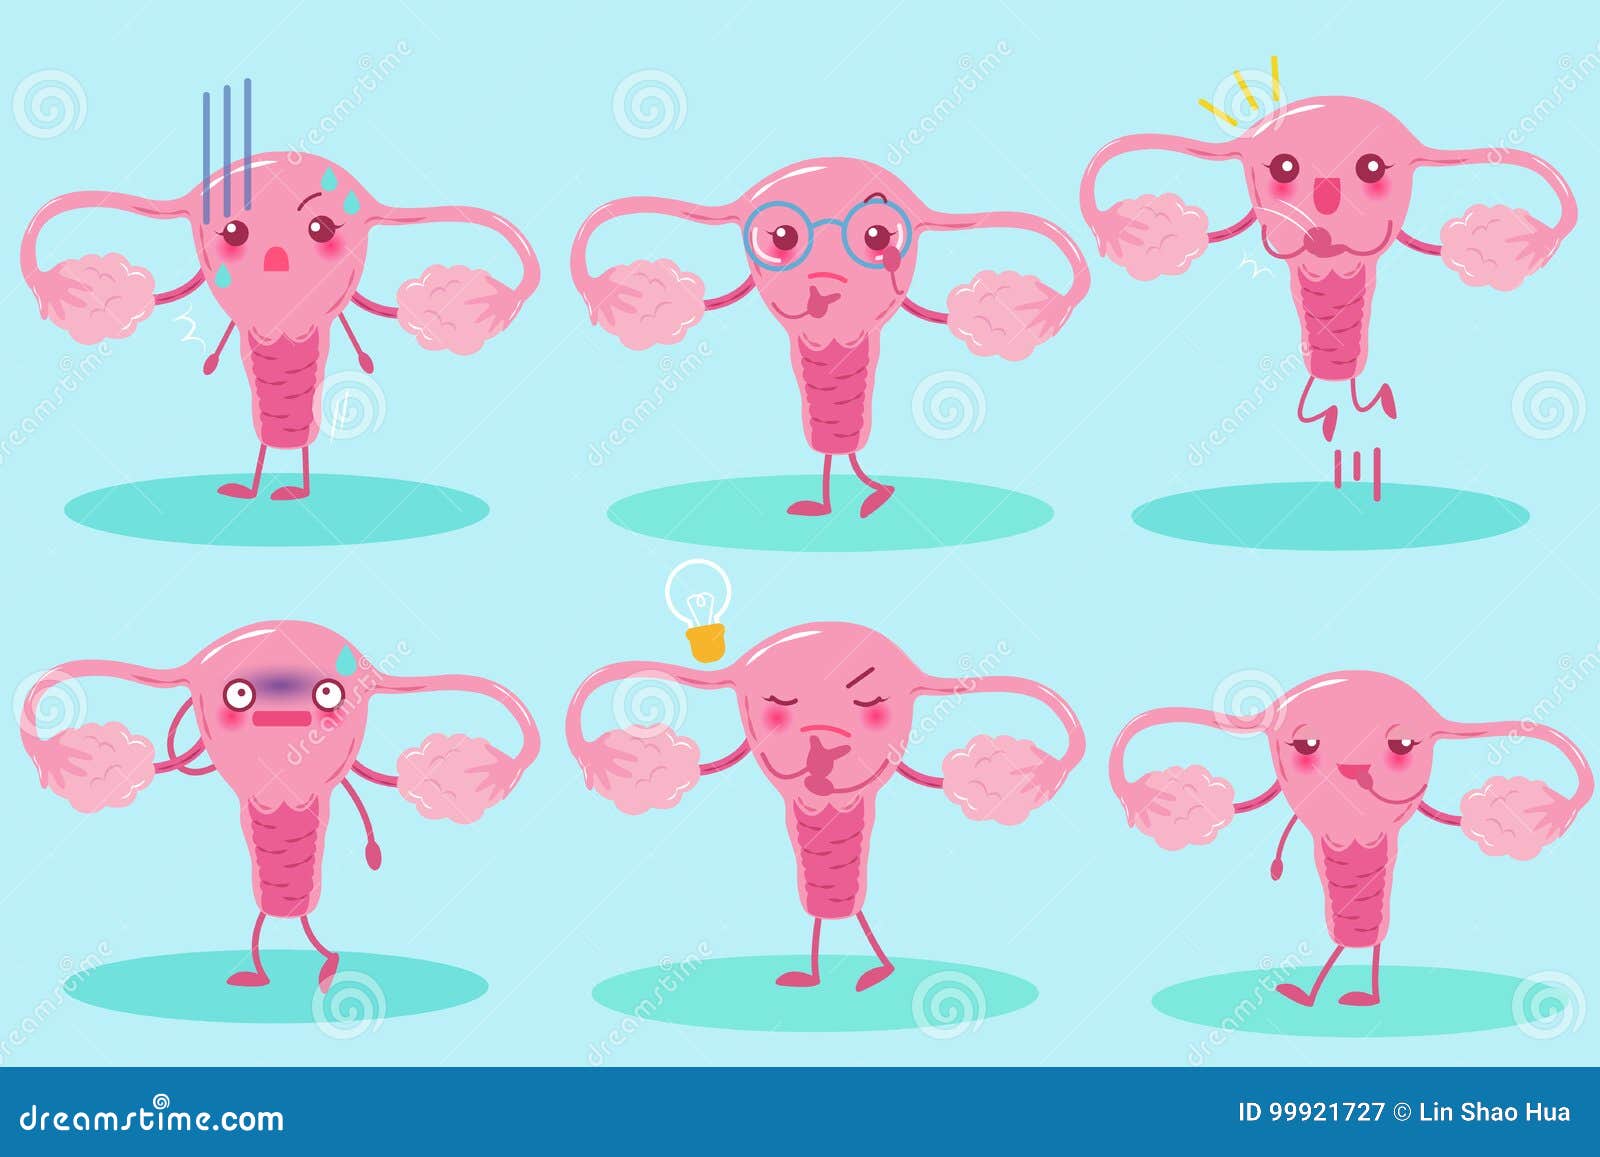 Cute cartoon uterus stock illustration. Illustration of ovary - 99921727